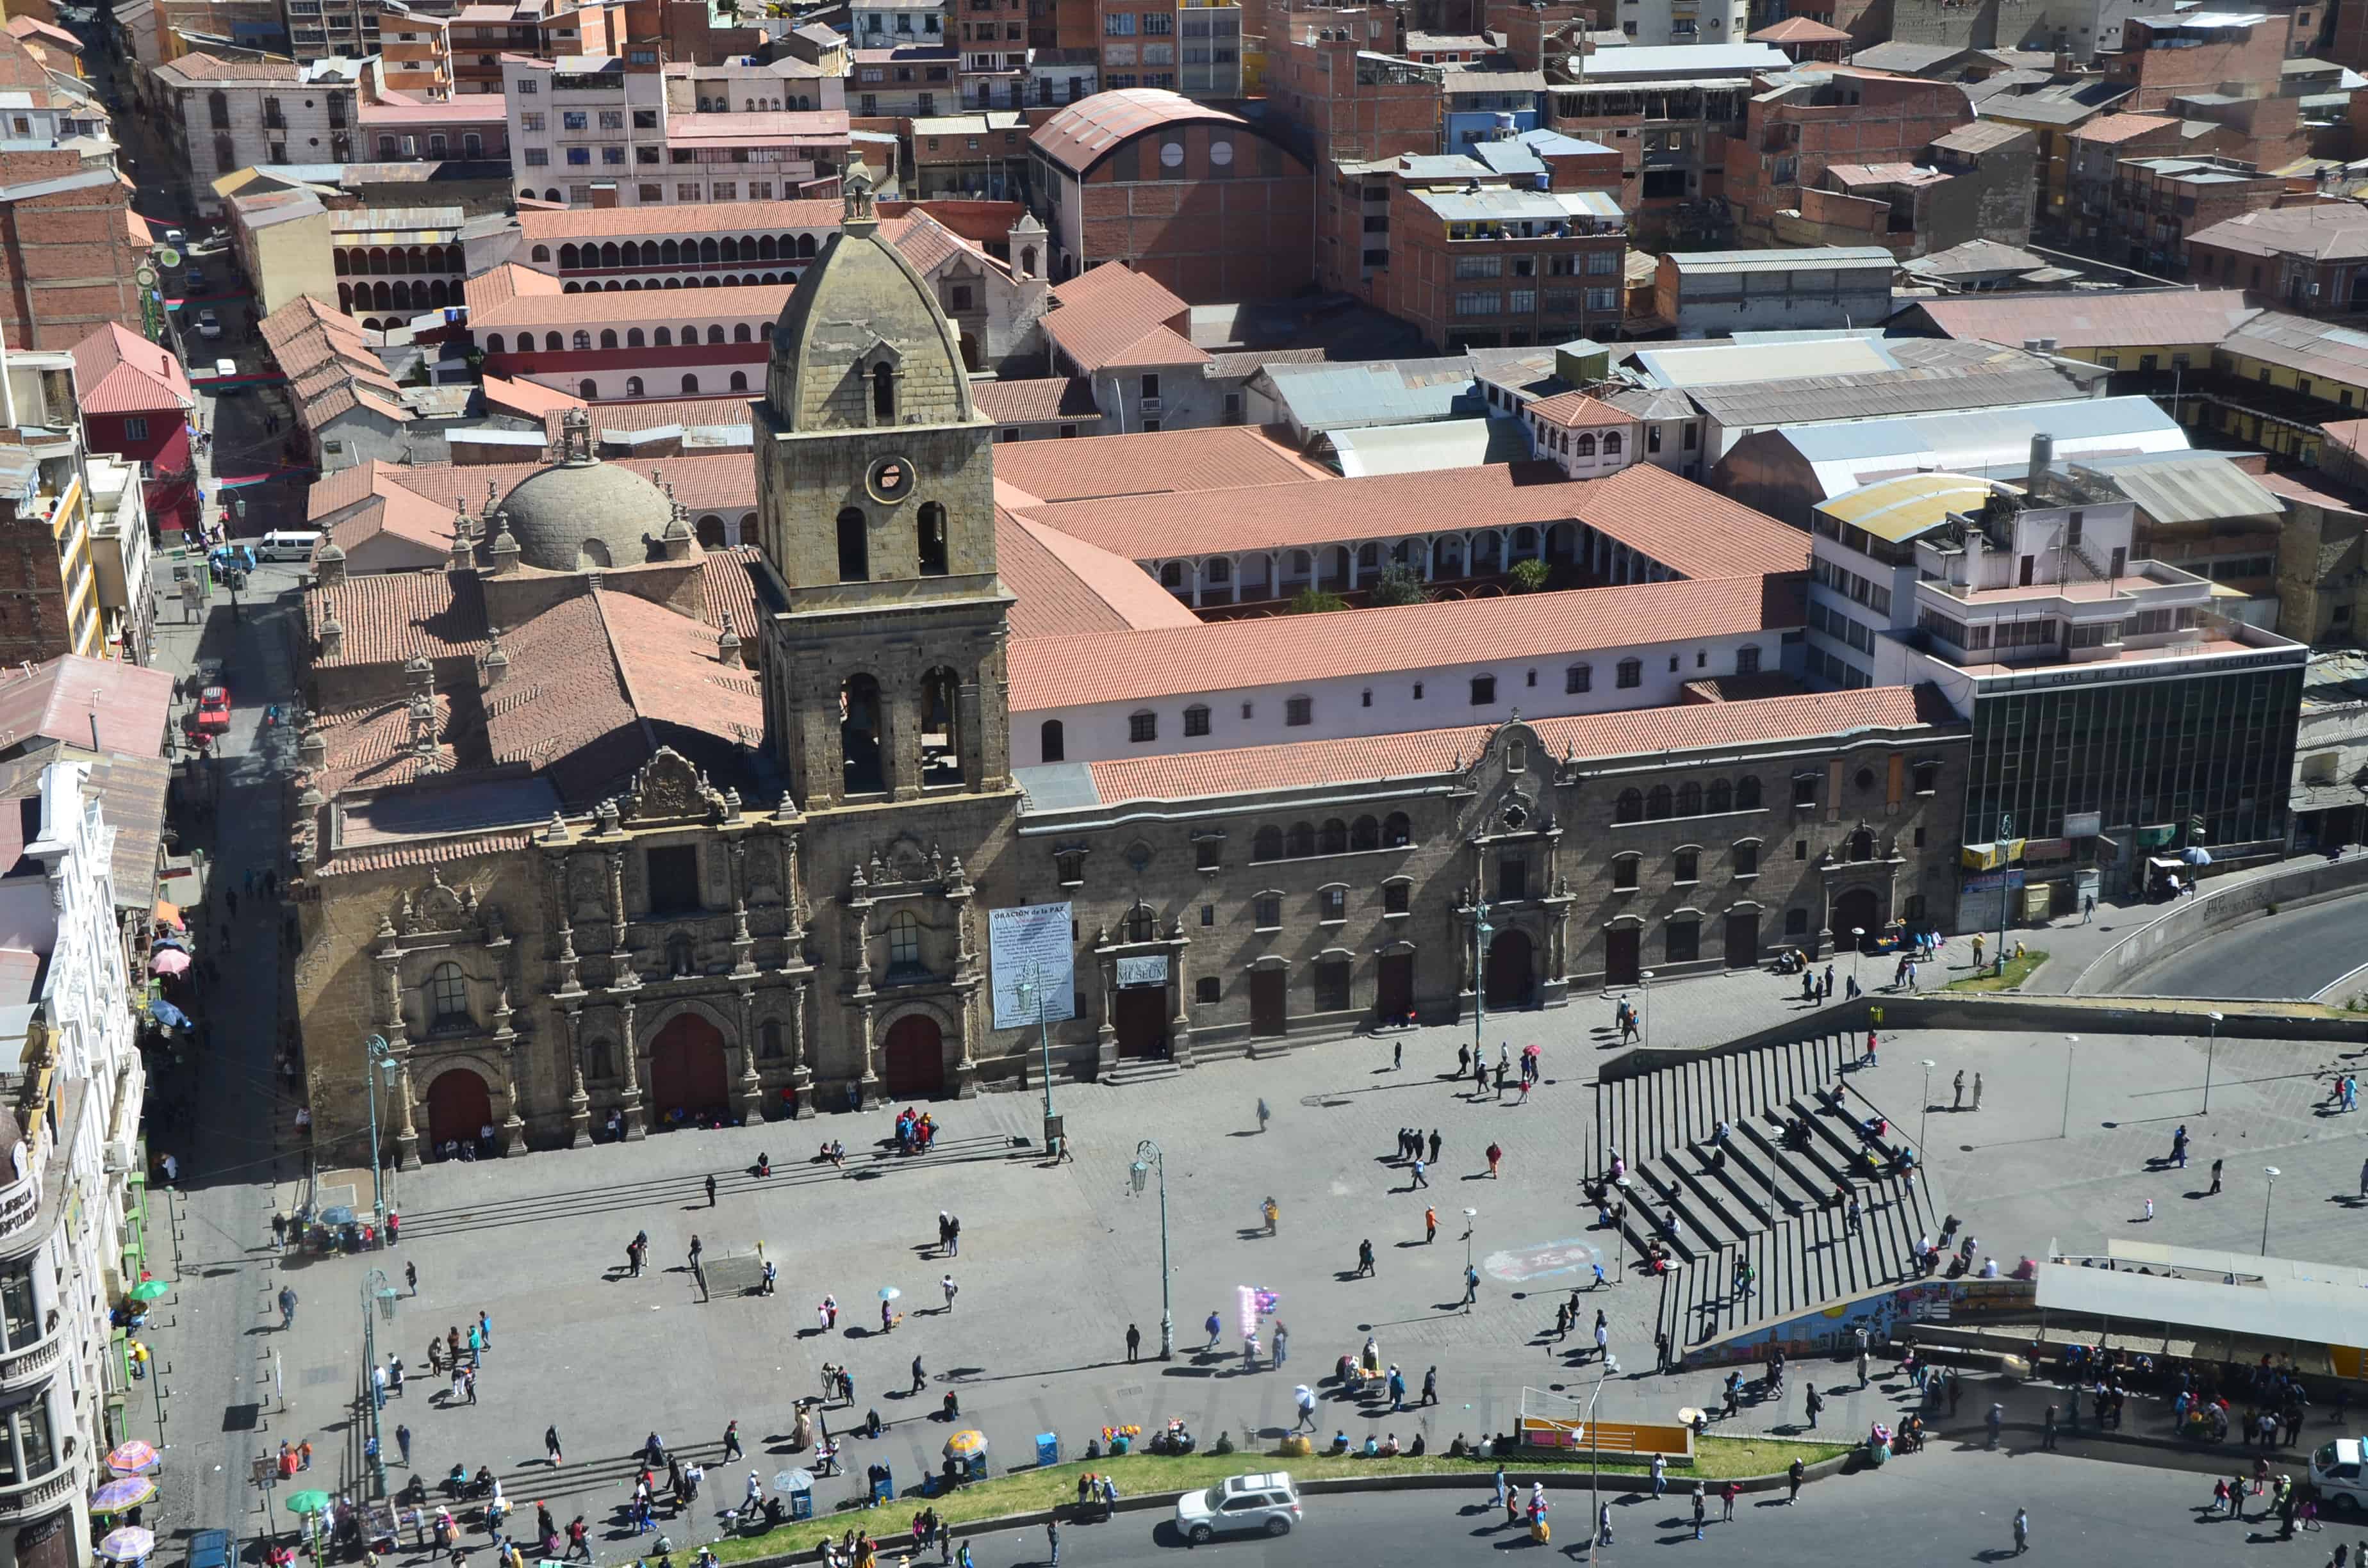 Iglesia de San Francisco in La Paz, Bolivia